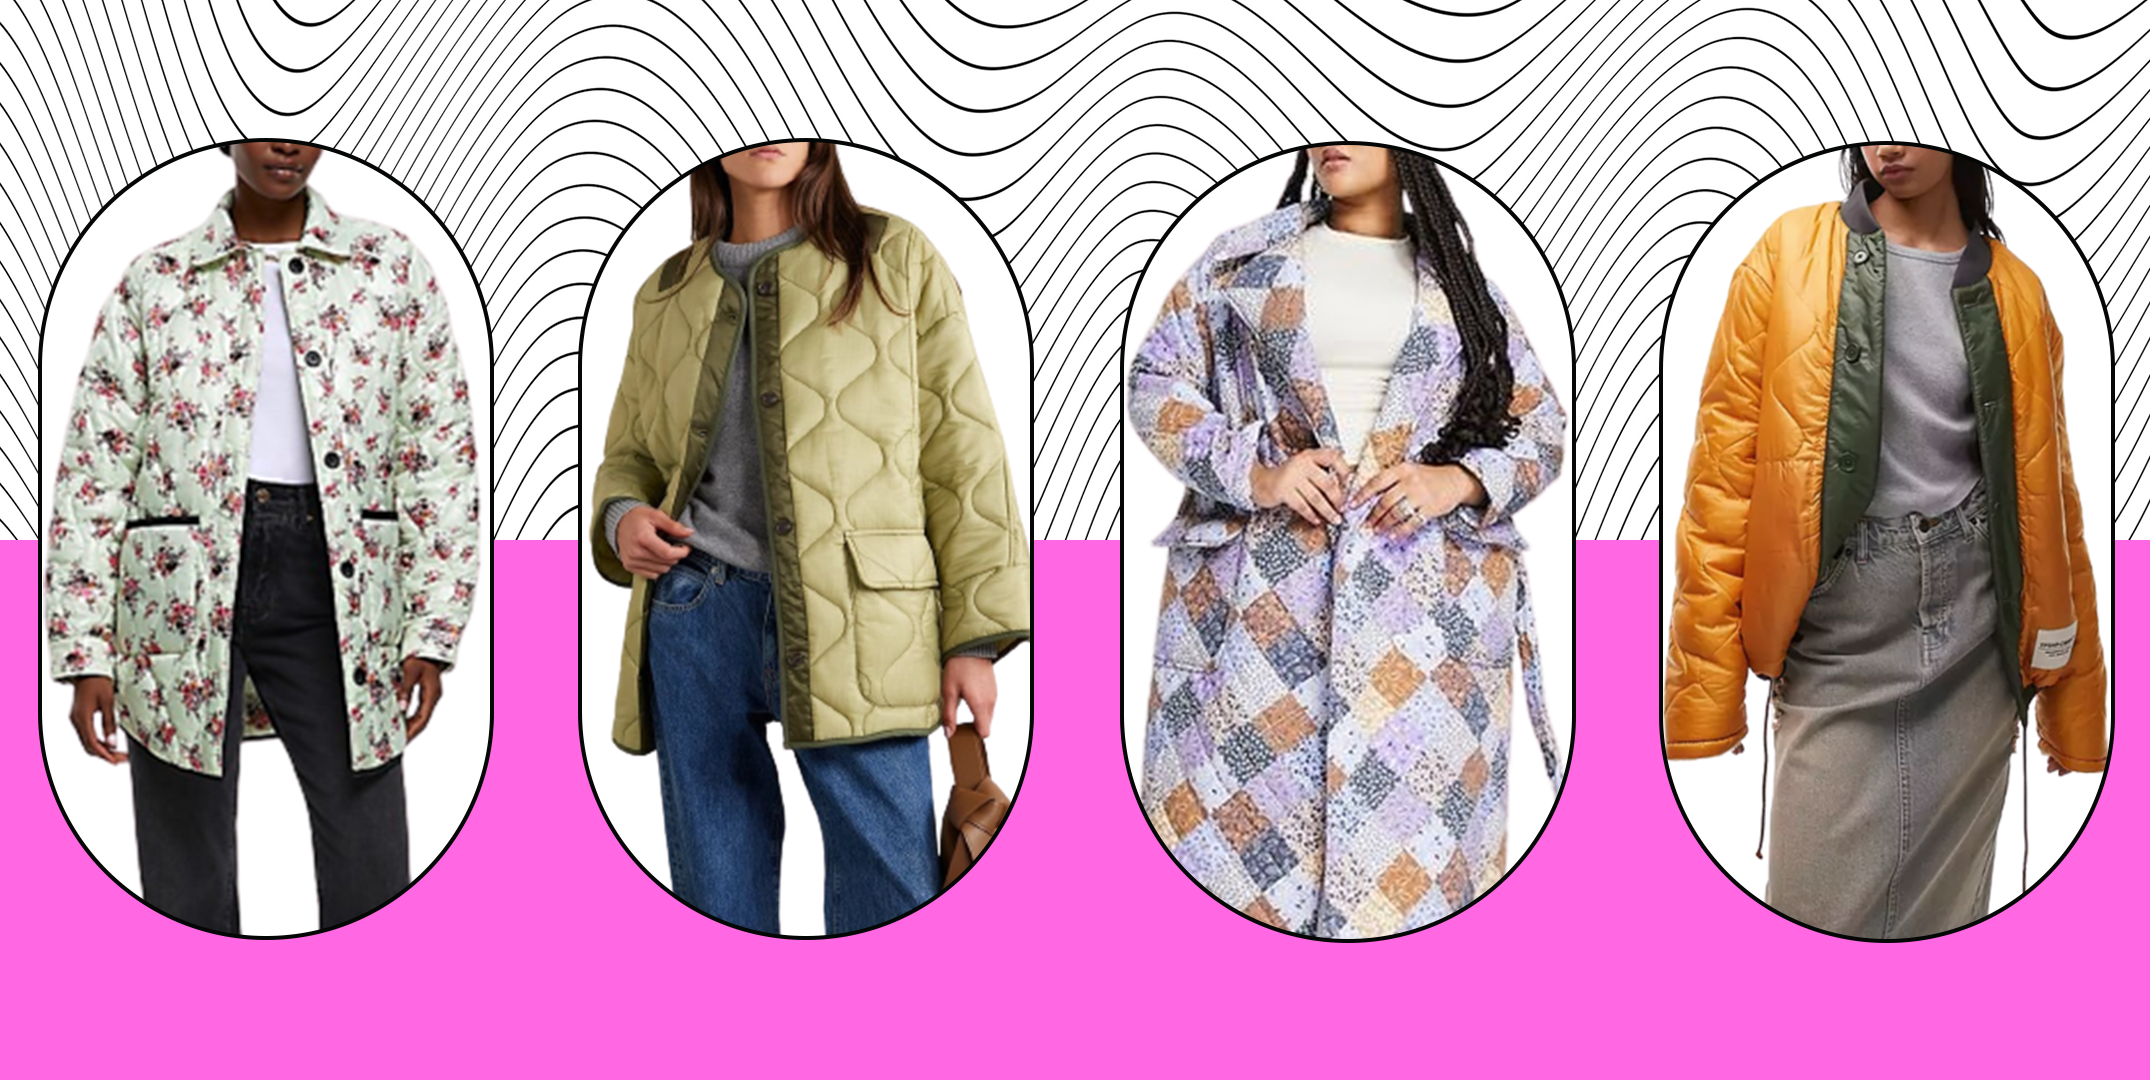 Trendy pretty Stylish Graceful Winter Inside Full Fur Jackets For Women /Girls.